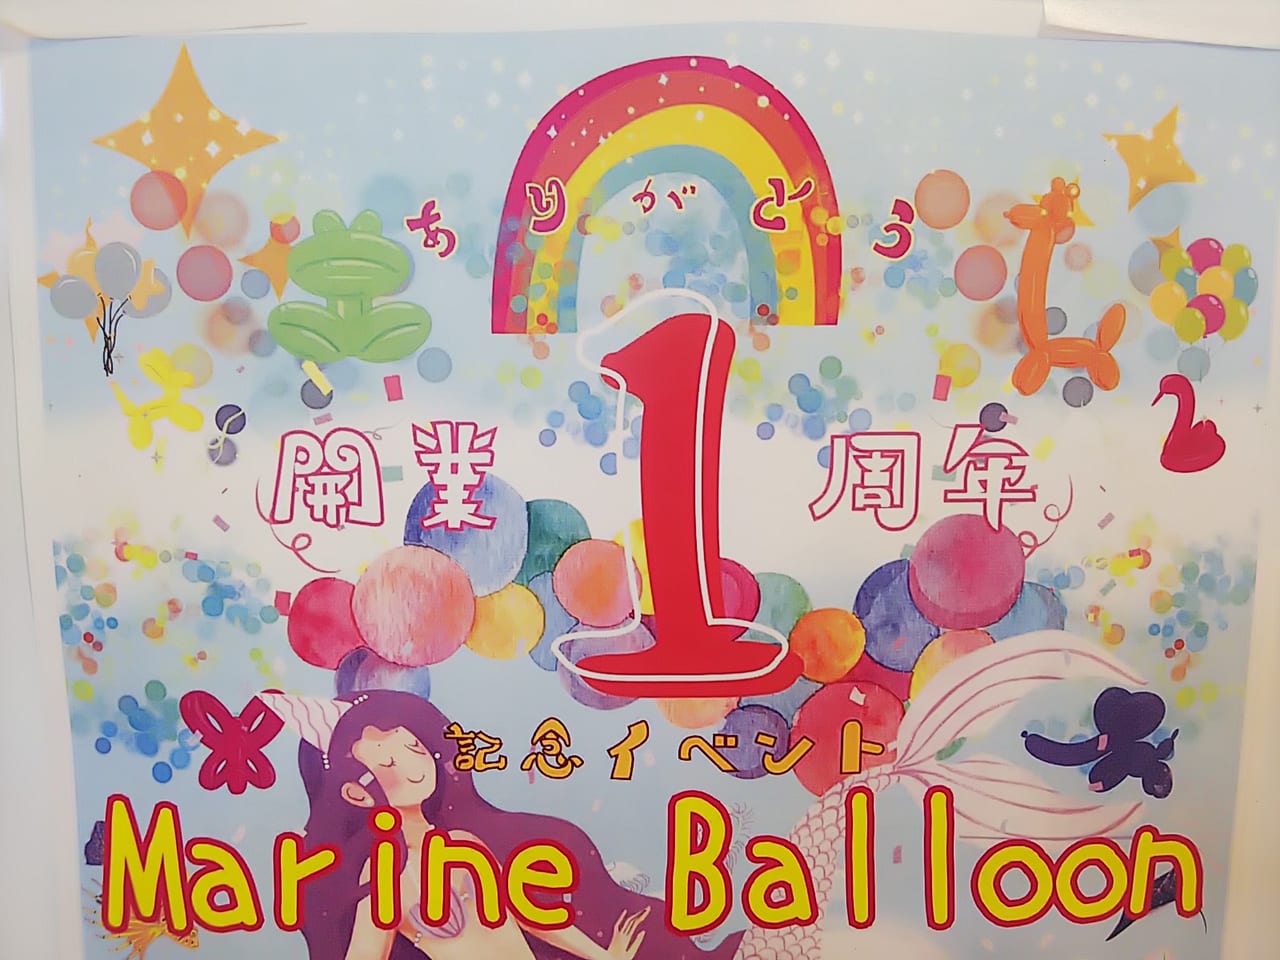 【のんさかイベント】1周年ありがとう記念イベント “Marine Balloon (マリンバルーン)” 』